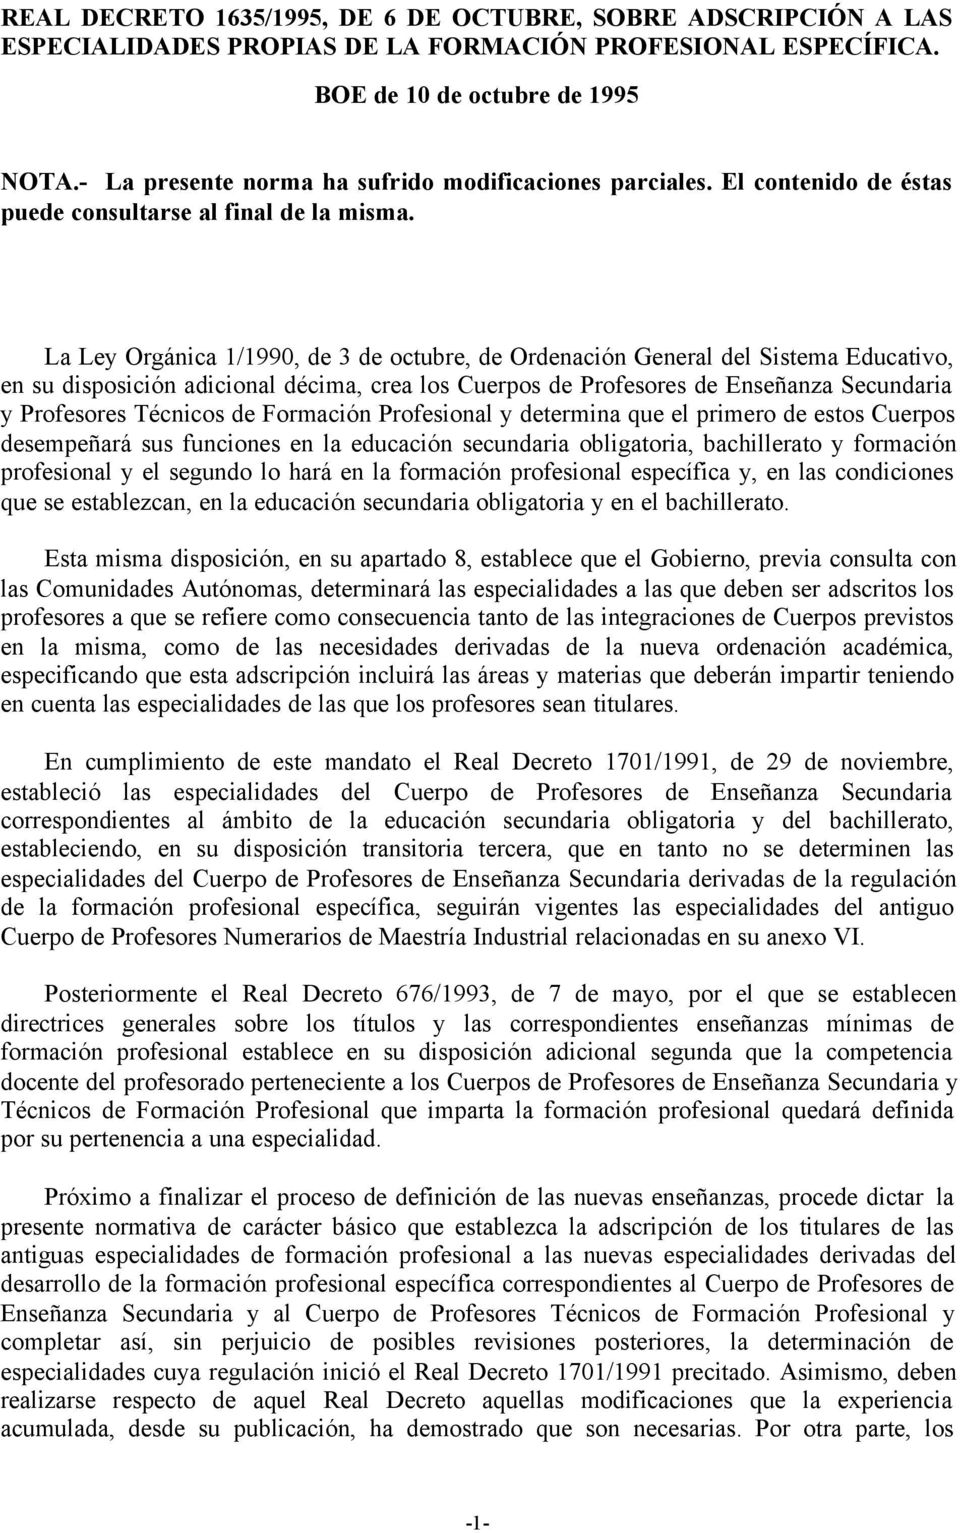 La Ley Orgánica 1/1990, de 3 de octubre, de Ordenación General del Sistema Educativo, en su disposición adicional décima, crea los Cuerpos de Profesores de Enseñanza Secundaria y Profesores Técnicos